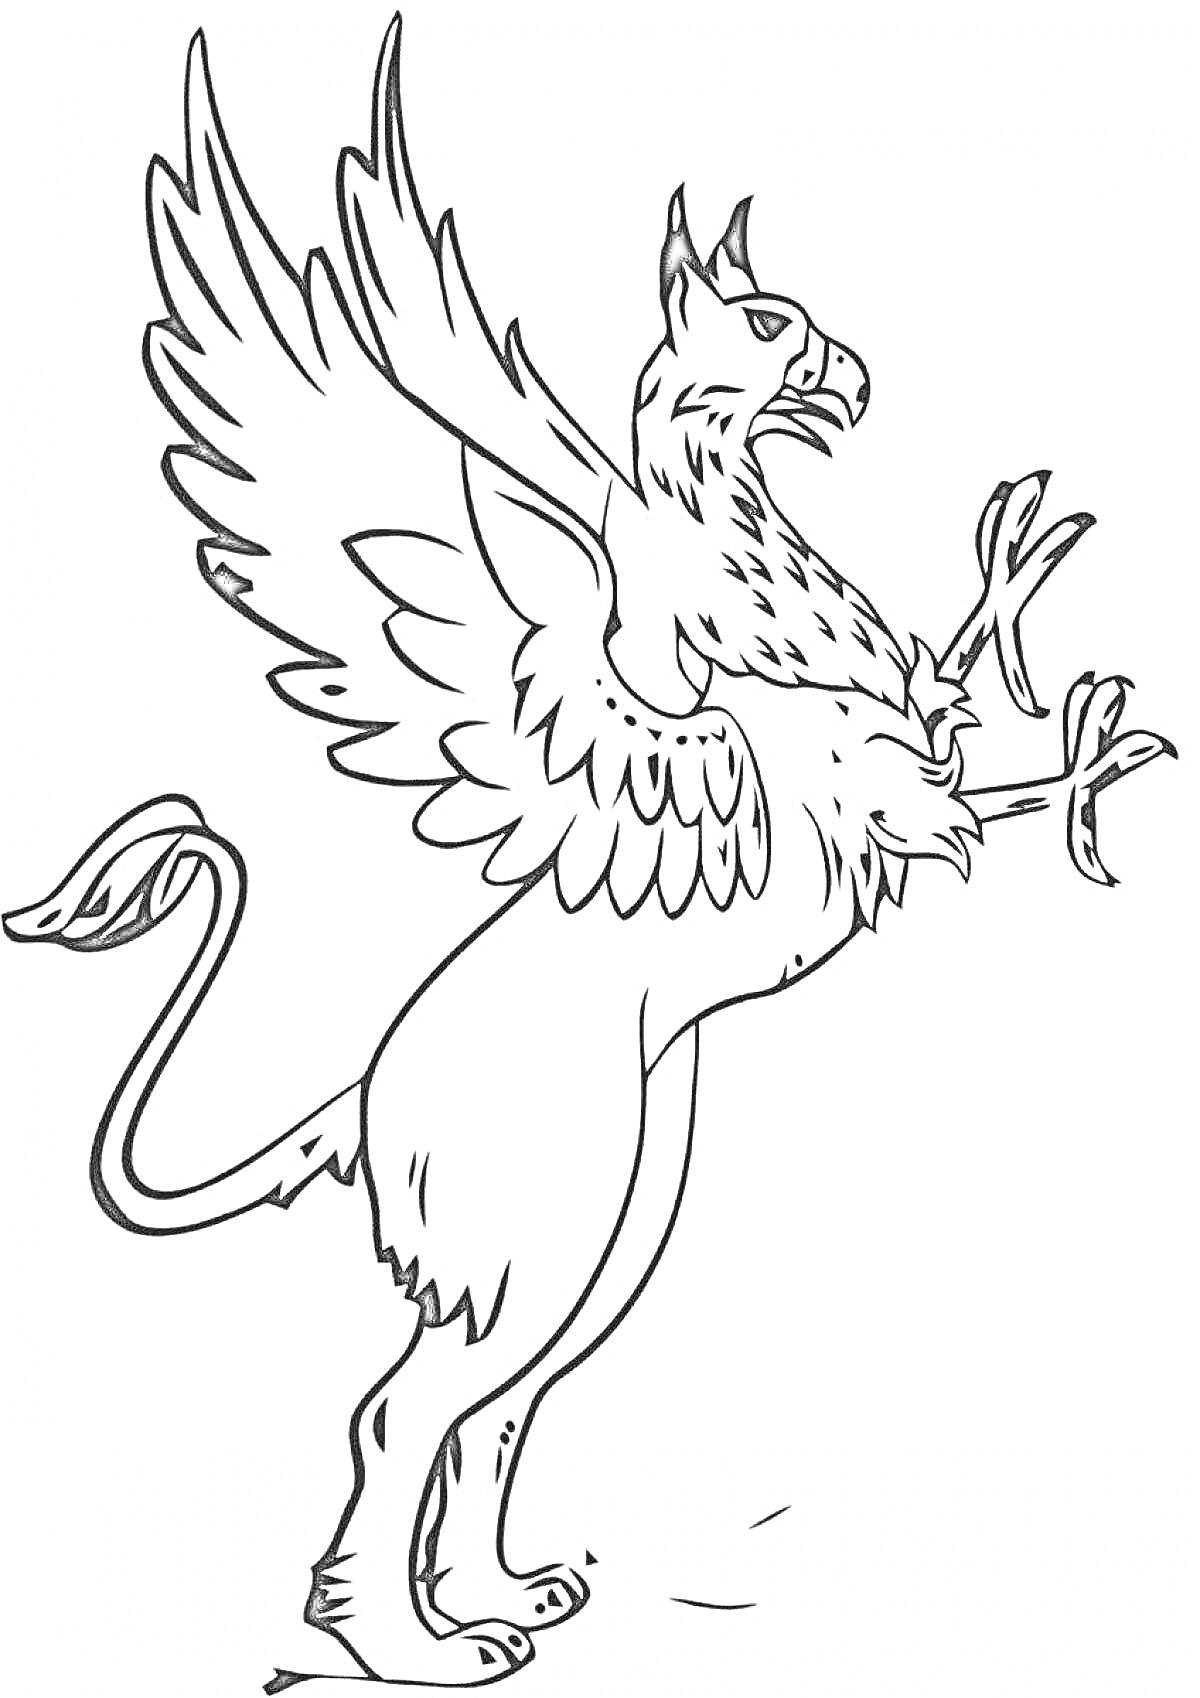 Раскраска Грифон с распахнутыми крыльями и поднятыми лапами